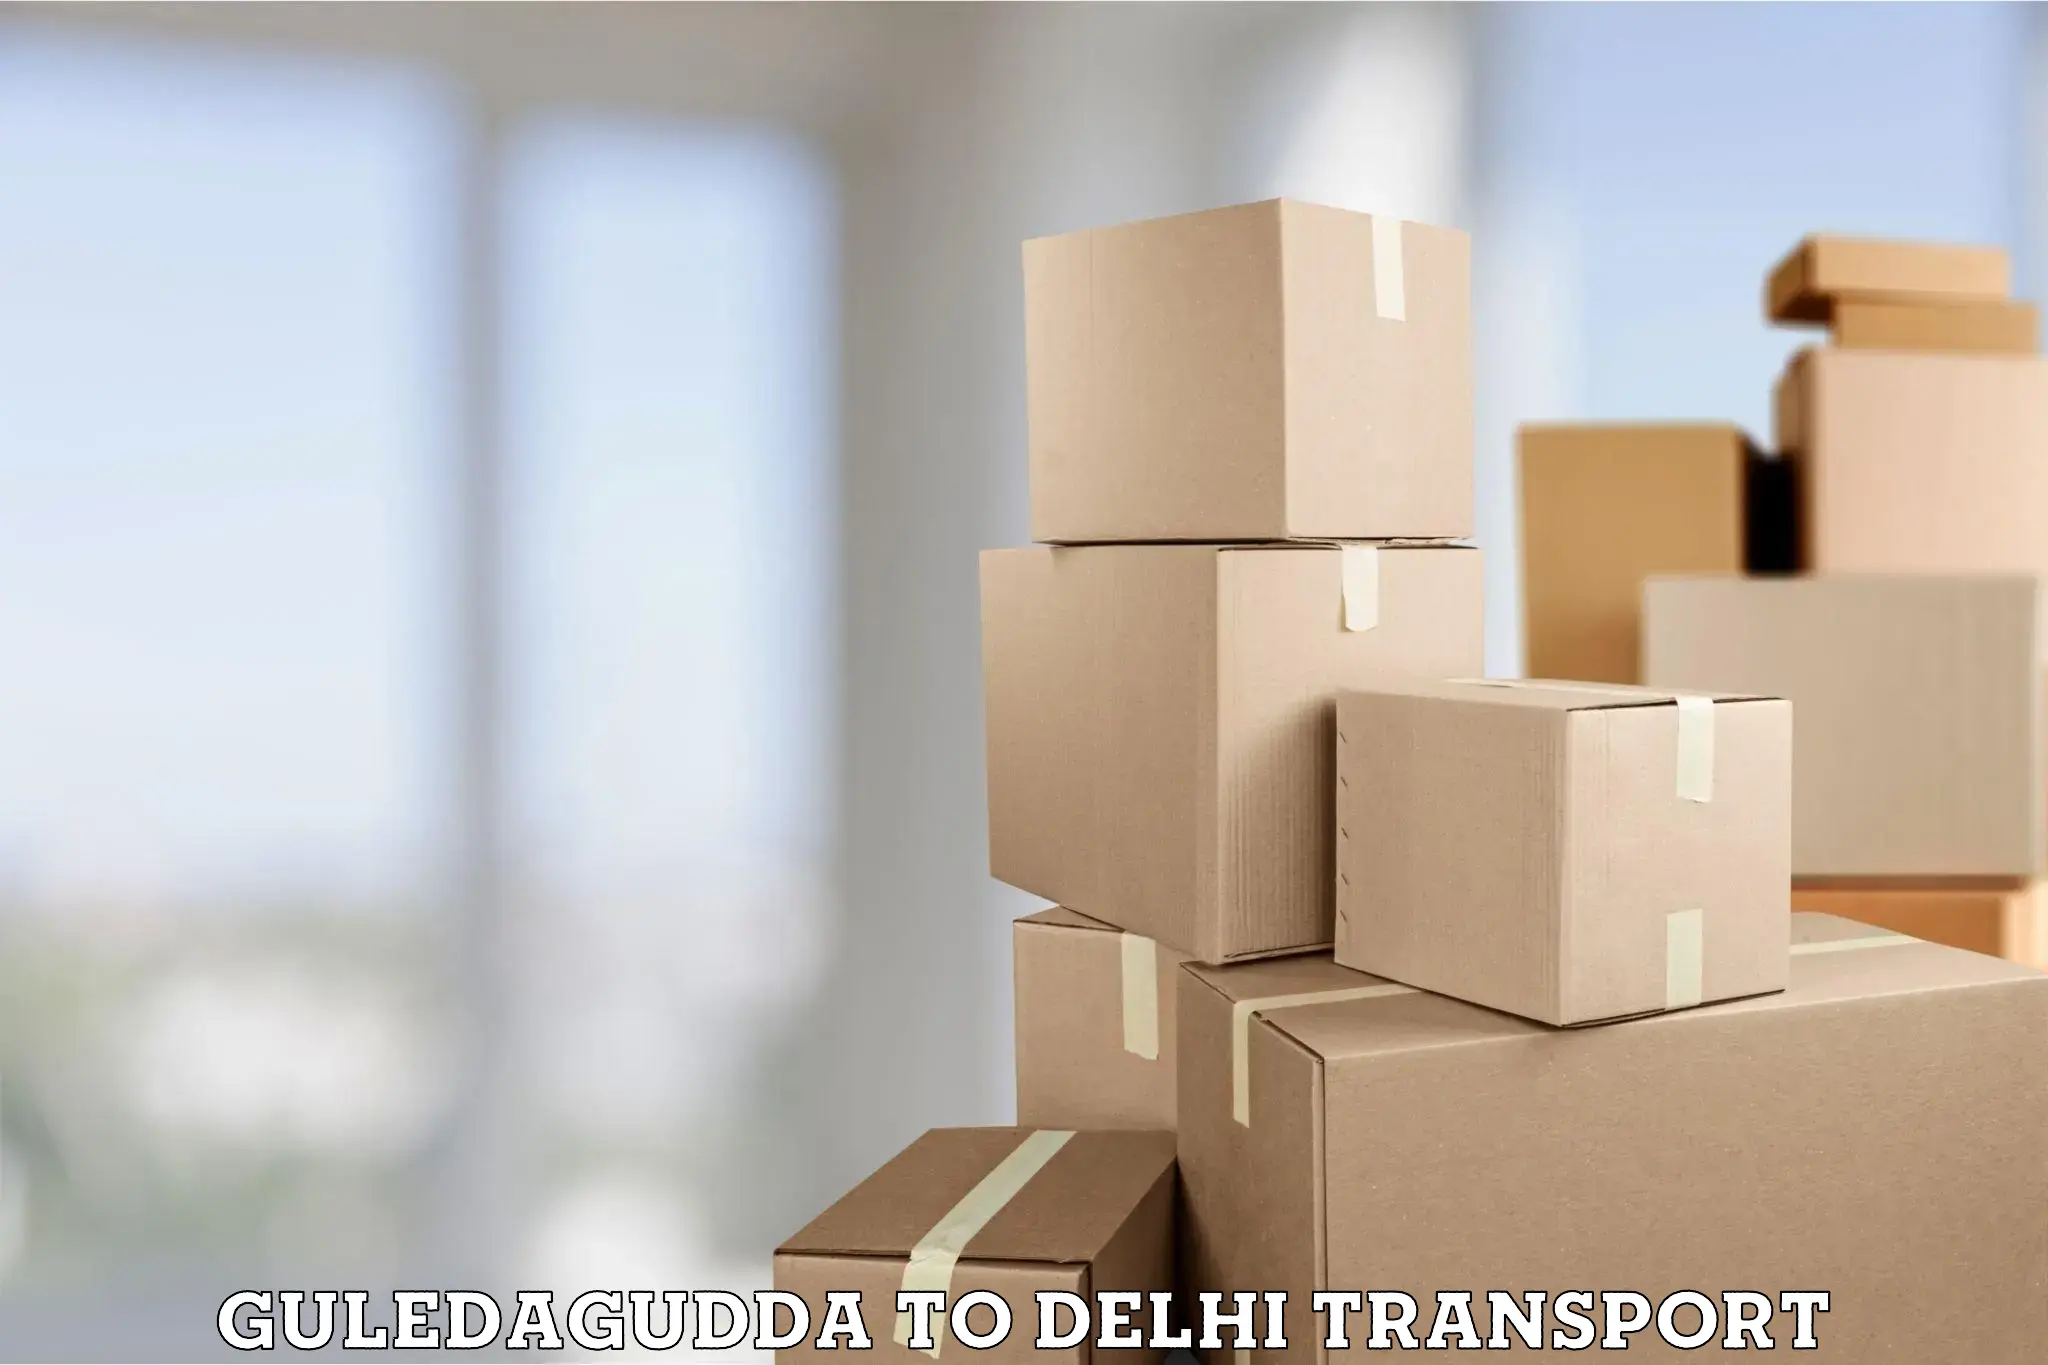 Vehicle courier services Guledagudda to Jamia Millia Islamia New Delhi